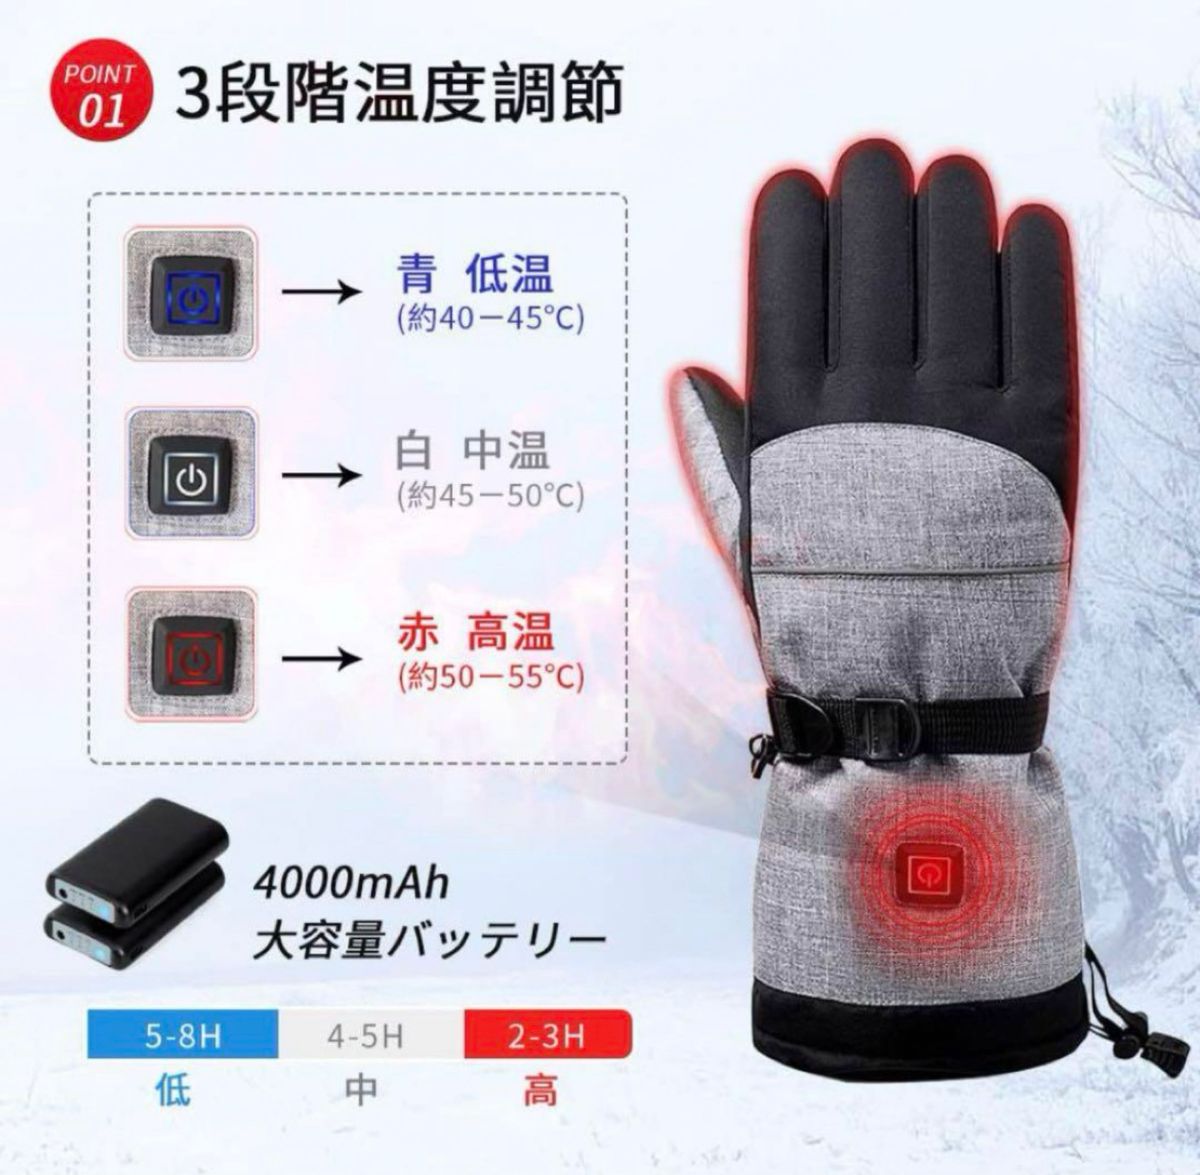 【新品】電熱グローブ 防水防寒 充電バッテリー 用防寒手袋 ツーリング スキー